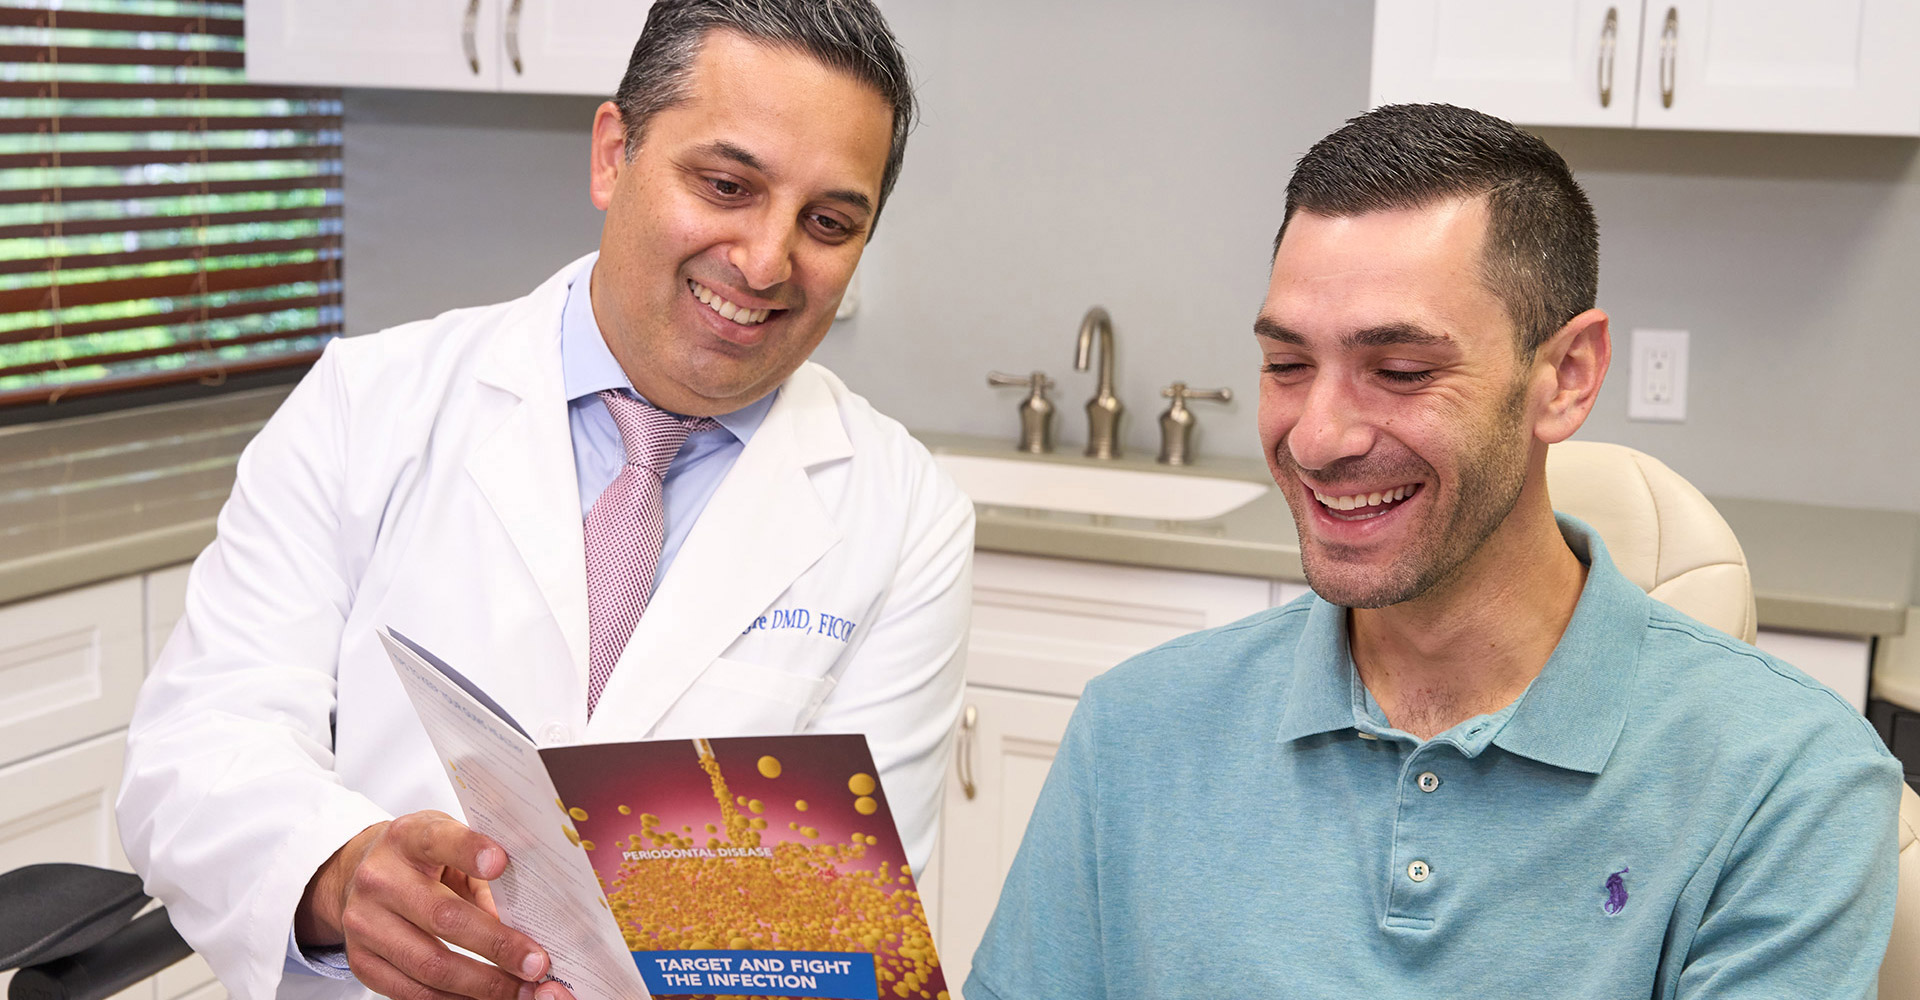 Dr. Alegre showing a patient a brochure about Gum Disease Treatment.